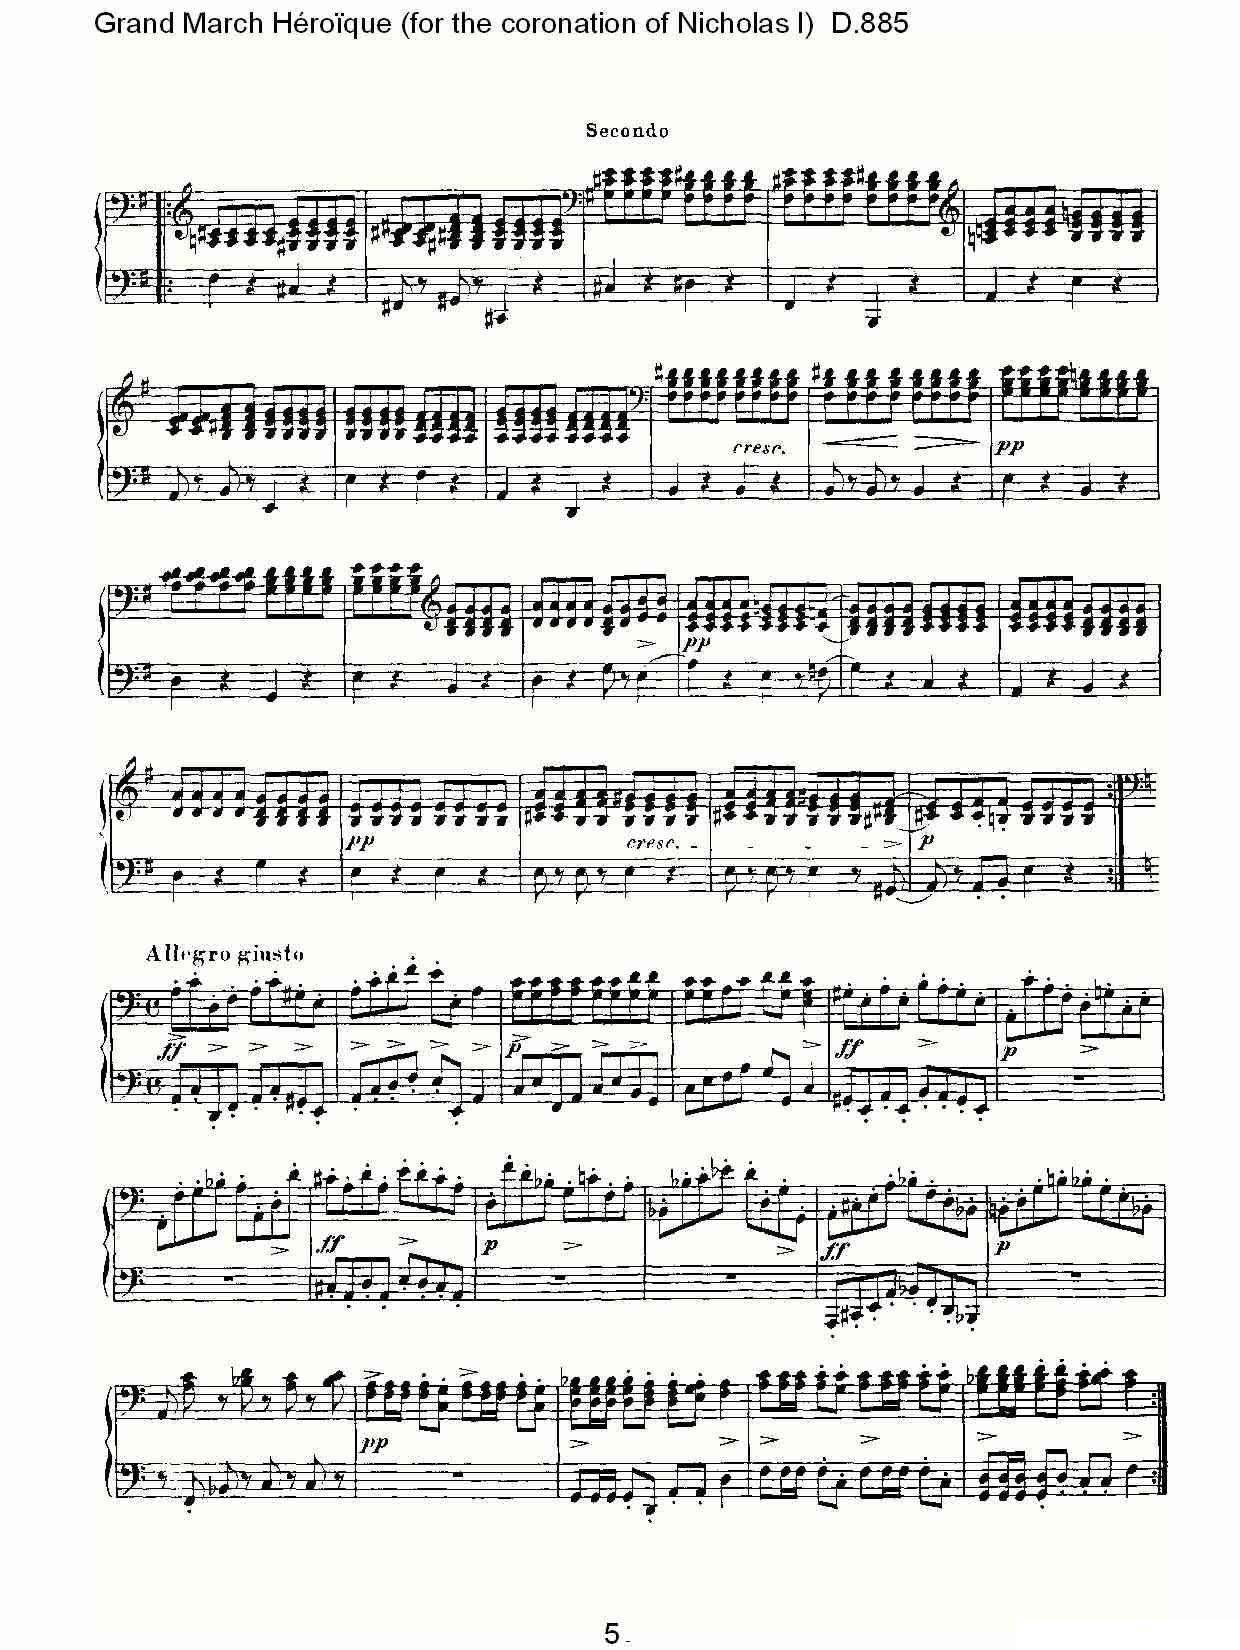 豪华进行曲（为尼古拉斯一世加冕礼而作)D.88）钢琴曲谱（图5）